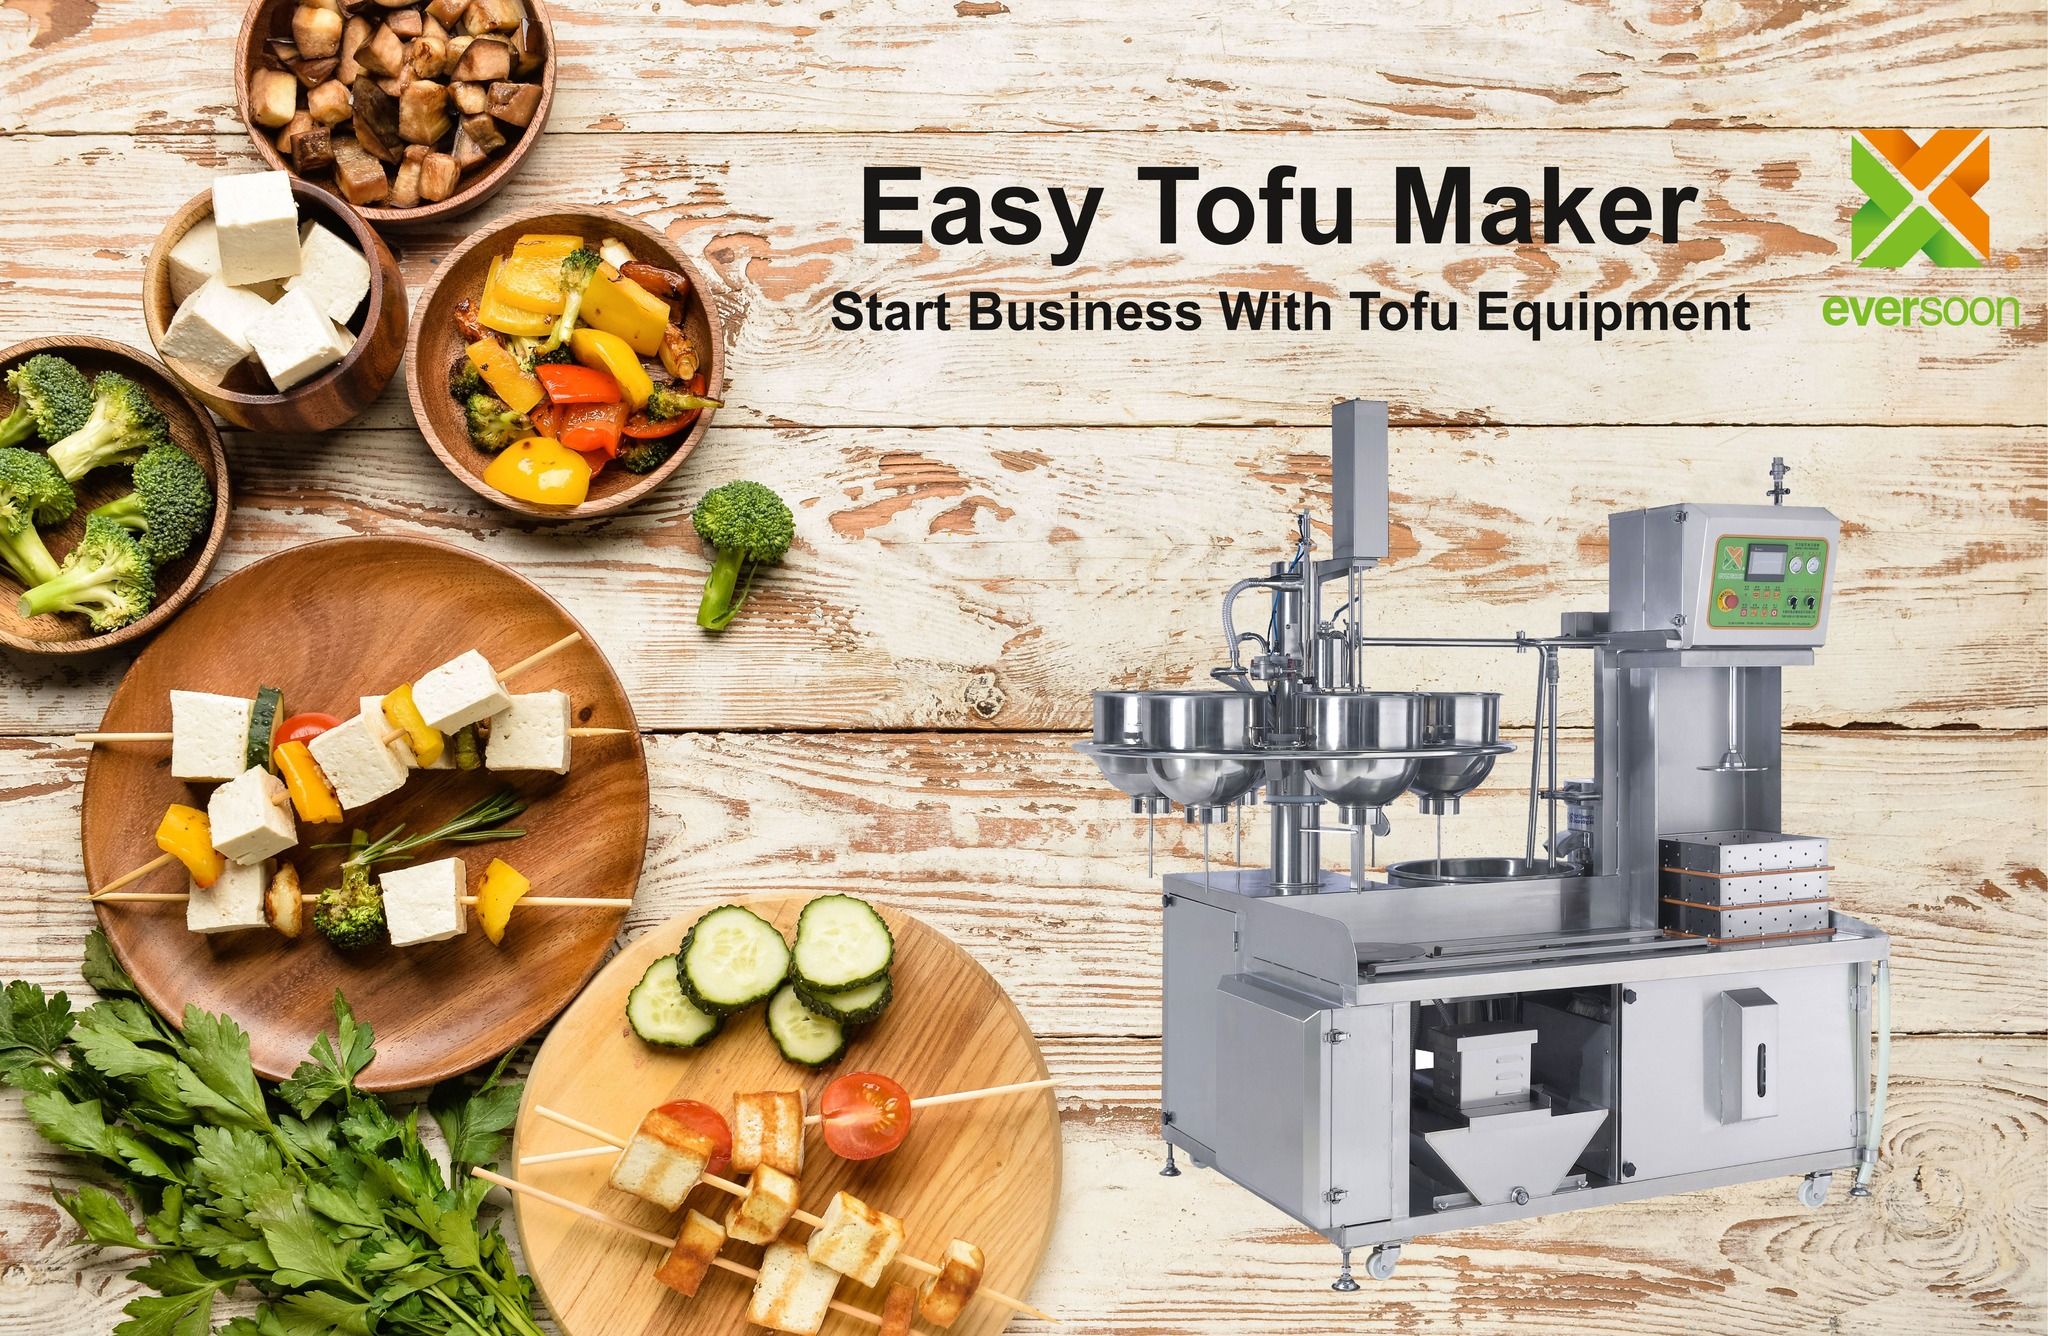 Máquina automática de fazer tofu, Easy Tofu Maker, Máquina de Tofu Frito, Fabricação industrial de tofu, máquina de tofu pequena, Equipamento de soja, máquina de carne de soja, máquina de fazer leite de soja e tofu, equipamento de tofu, máquina de tofu, máquina de tofu à venda, fabricante de máquina de tofu, fabricante de máquina de tofu, preço da máquina de tofu, maquinaria de tofu, maquinaria e equipamento de tofu, fabricante de tofu, máquina de fabricante de tofu, fabricação de tofu, equipamento de fabricação de tofu, máquina de fazer tofu, preço da máquina de fazer tofu, fabricantes de tofu, fabricação de tofu, equipamento de fabricação de tofu, planta de fabricação de tofu, equipamento de produção de tofu, linha de produção de tofu, preço da linha de produção de tofu, fabricante de tofu, máquina automática de tofu, Máquina de carne vegana, Linha de produção de carne vegana, Equipamentos e máquinas de tofu de legumes, máquina de tofu comercial, Máquina automática de leite de soja, Máquina automática de fazer leite de soja, Fabricante de tofu fácil, produção de leite de soja, Máquina de bebida de soja, máquina comercial de fazer leite de soja e tofu, máquina de fazer leite de soja e tofu, Máquina de Cozinhar Leite de Soja, máquina de leite de soja, Máquina de leite de soja feita em Taiwan, Maquinaria de leite de soja, Maquinaria e equipamento de leite de soja, Fabricante de leite de soja, Máquina de fazer leite de soja, fabricantes de leite de soja, Produção de leite de soja, equipamento de produção de leite de soja, Linha de produção de leite de soja, preço da máquina de fazer leite de soja, máquina de processamento de soja, máquina de leite de soja, máquina de fazer leite de soja e tofu, fabricante comercial de leite de soja, máquina comercial de leite de soja, máquina comercial de leite de soja, máquina de leite de soja comercial, Caldeira de leite de soja para uso comercial, Moedor de leite de soja para uso comercial, Máquina de leite de soja para uso comercial, máquinas de leite de soja para uso comercial, equipamento de fabricação de leite de soja para loja